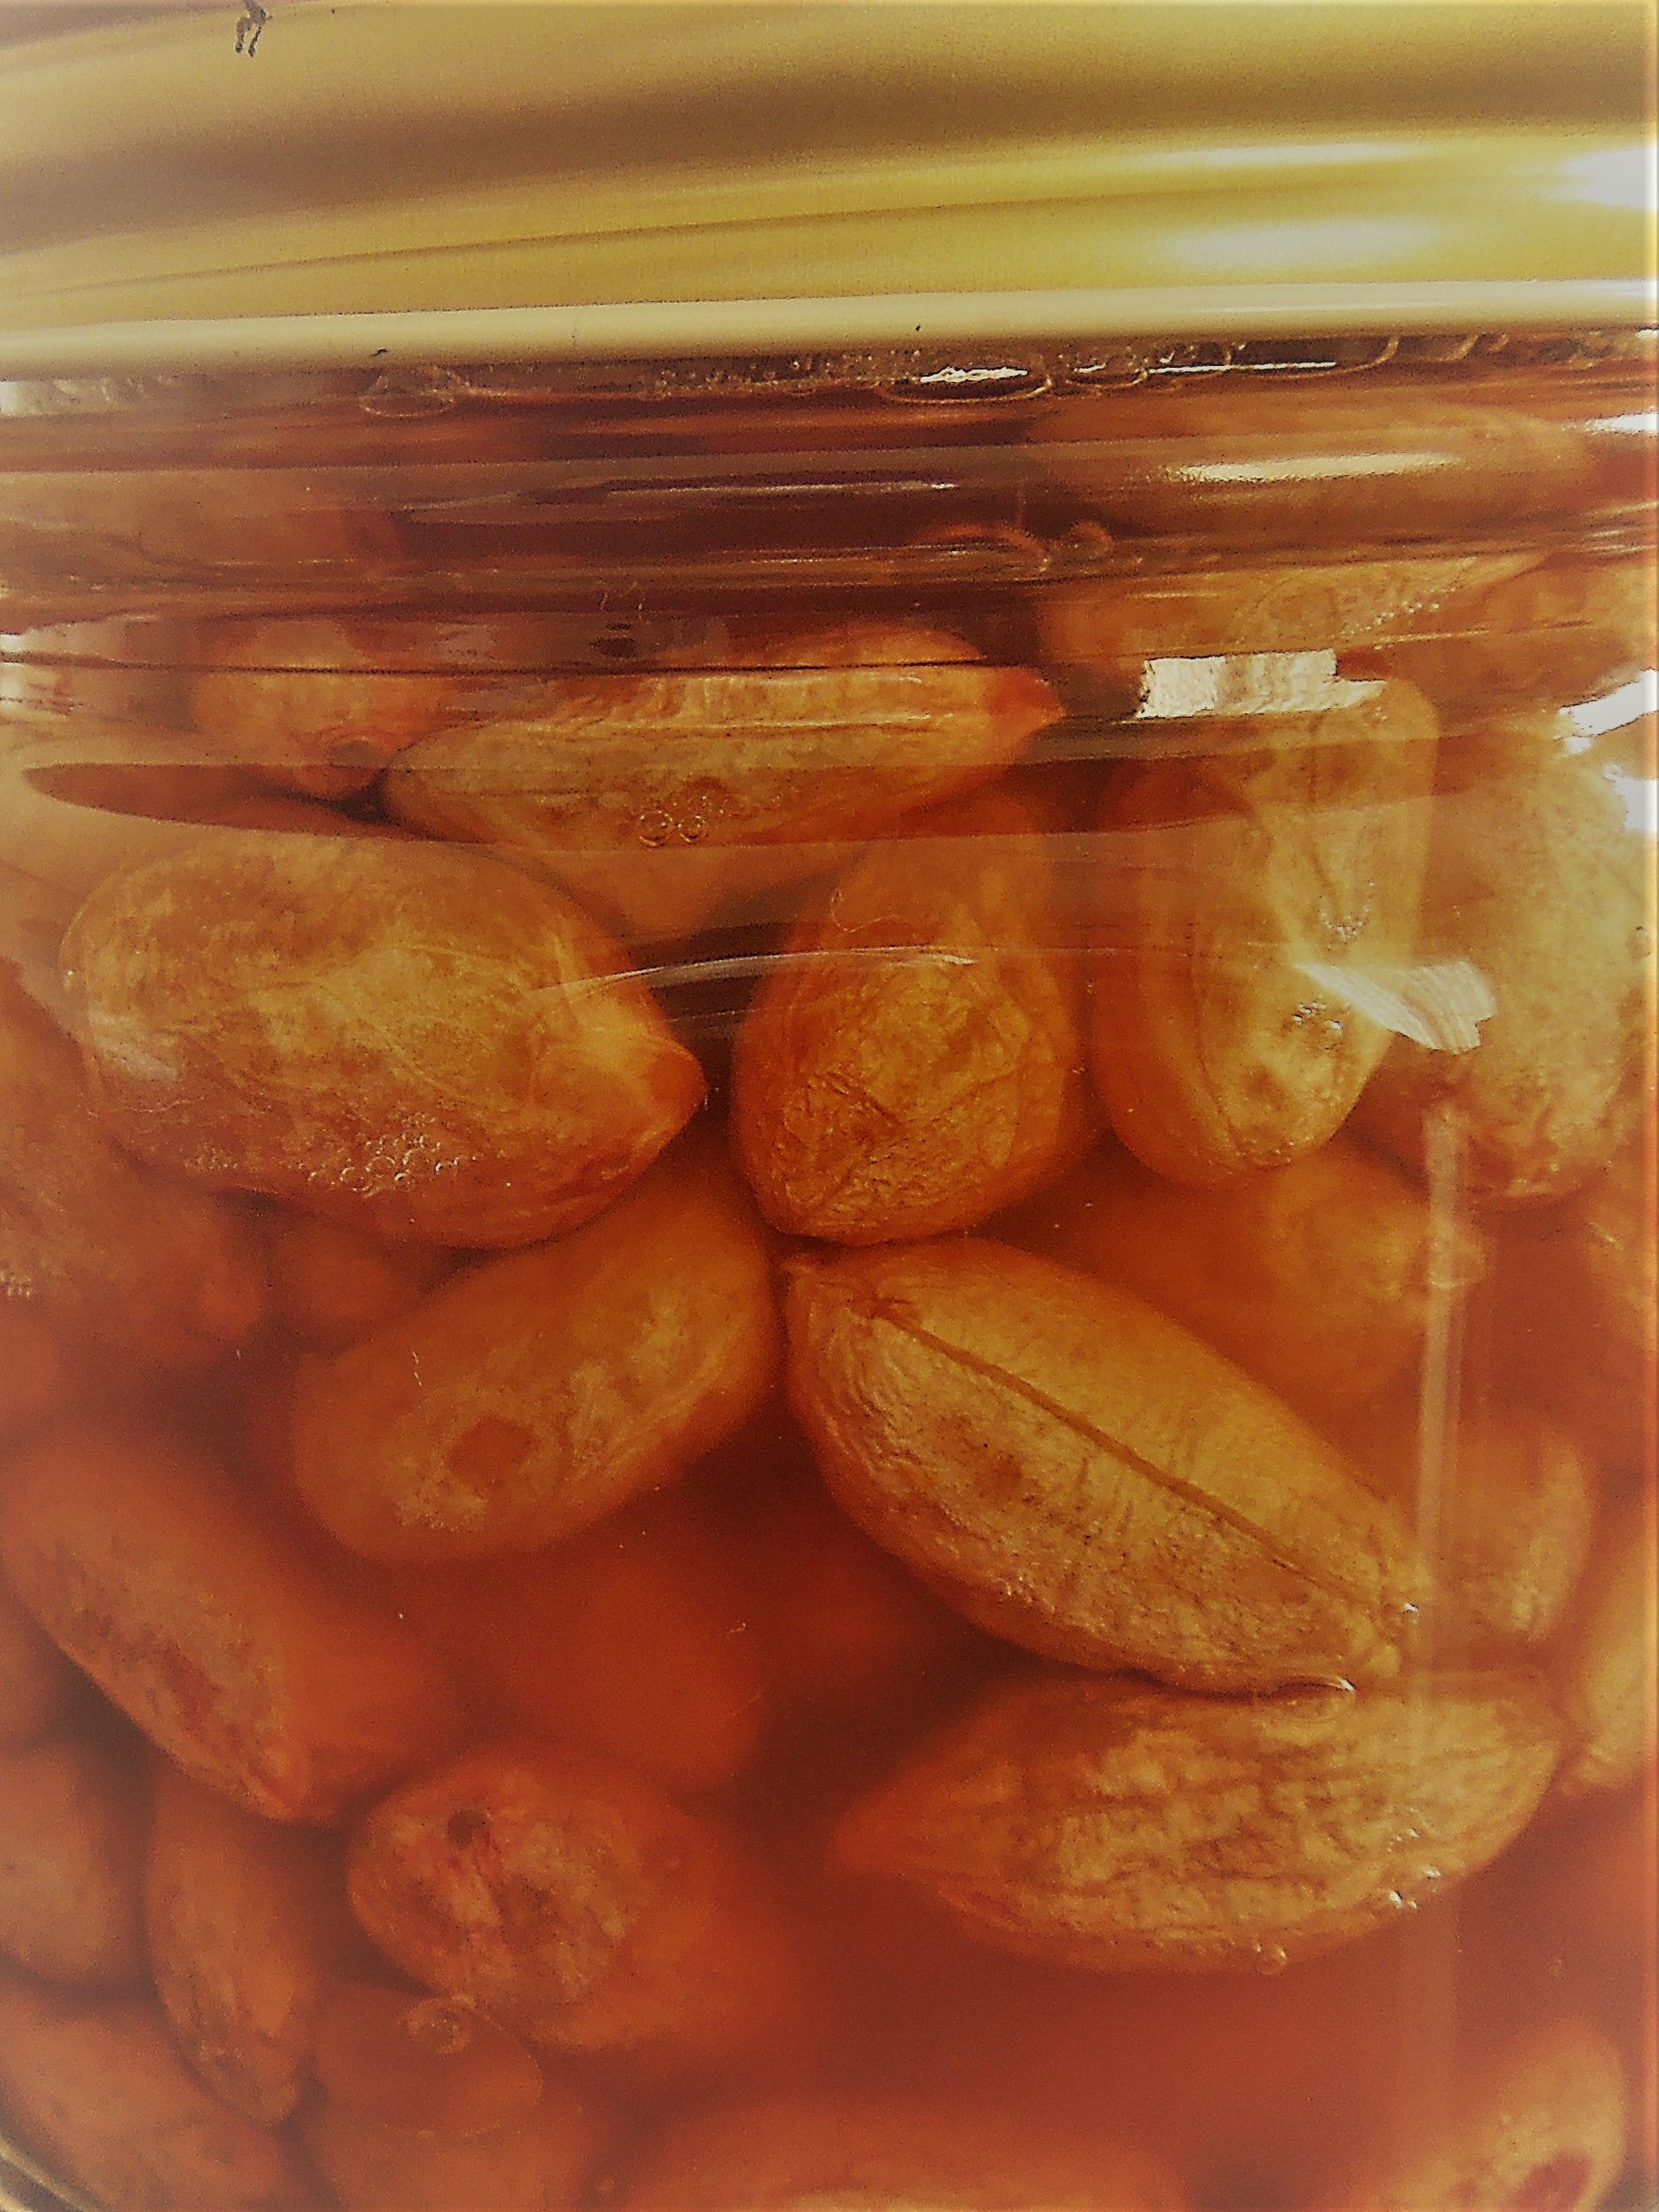 高血圧 酢漬けピーナッツの効果 ハッピー 楽天ブログ